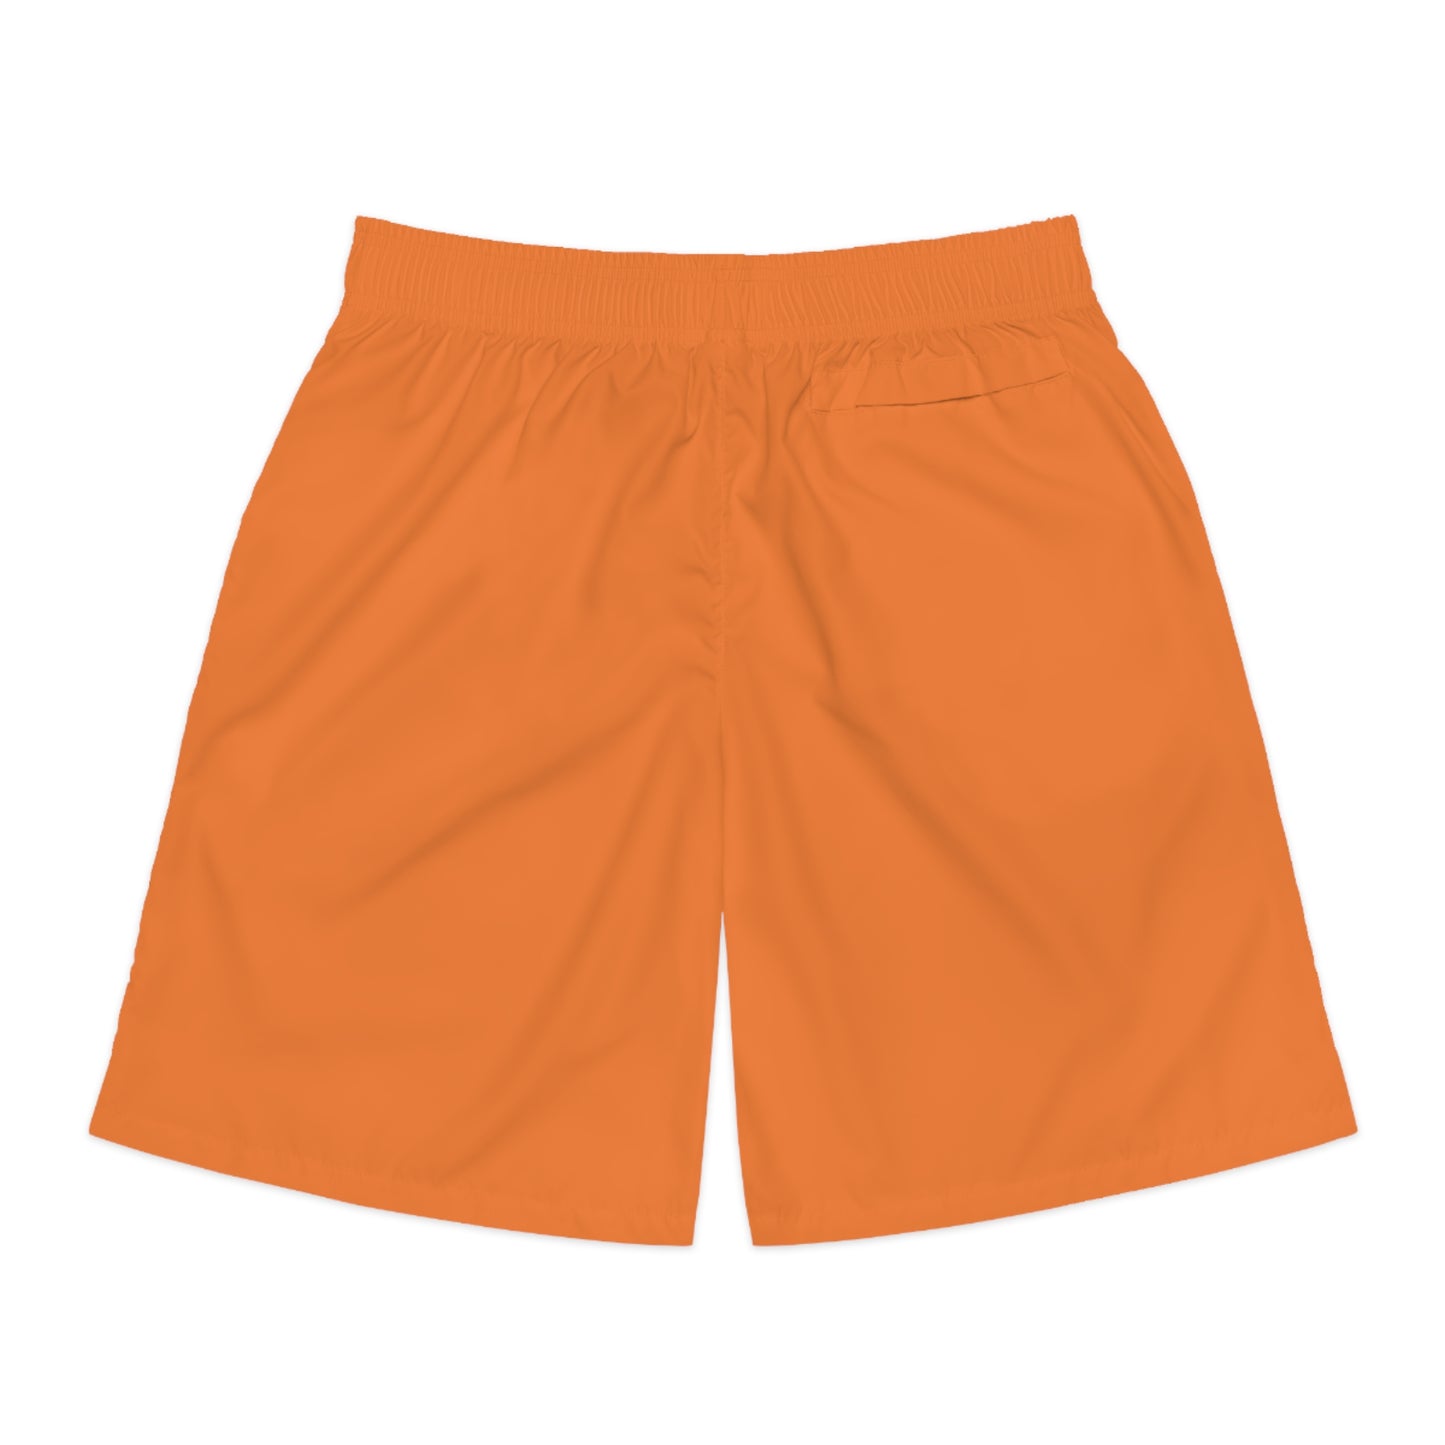 Dragon shorts (Crusta) - Men's Jogger Shorts